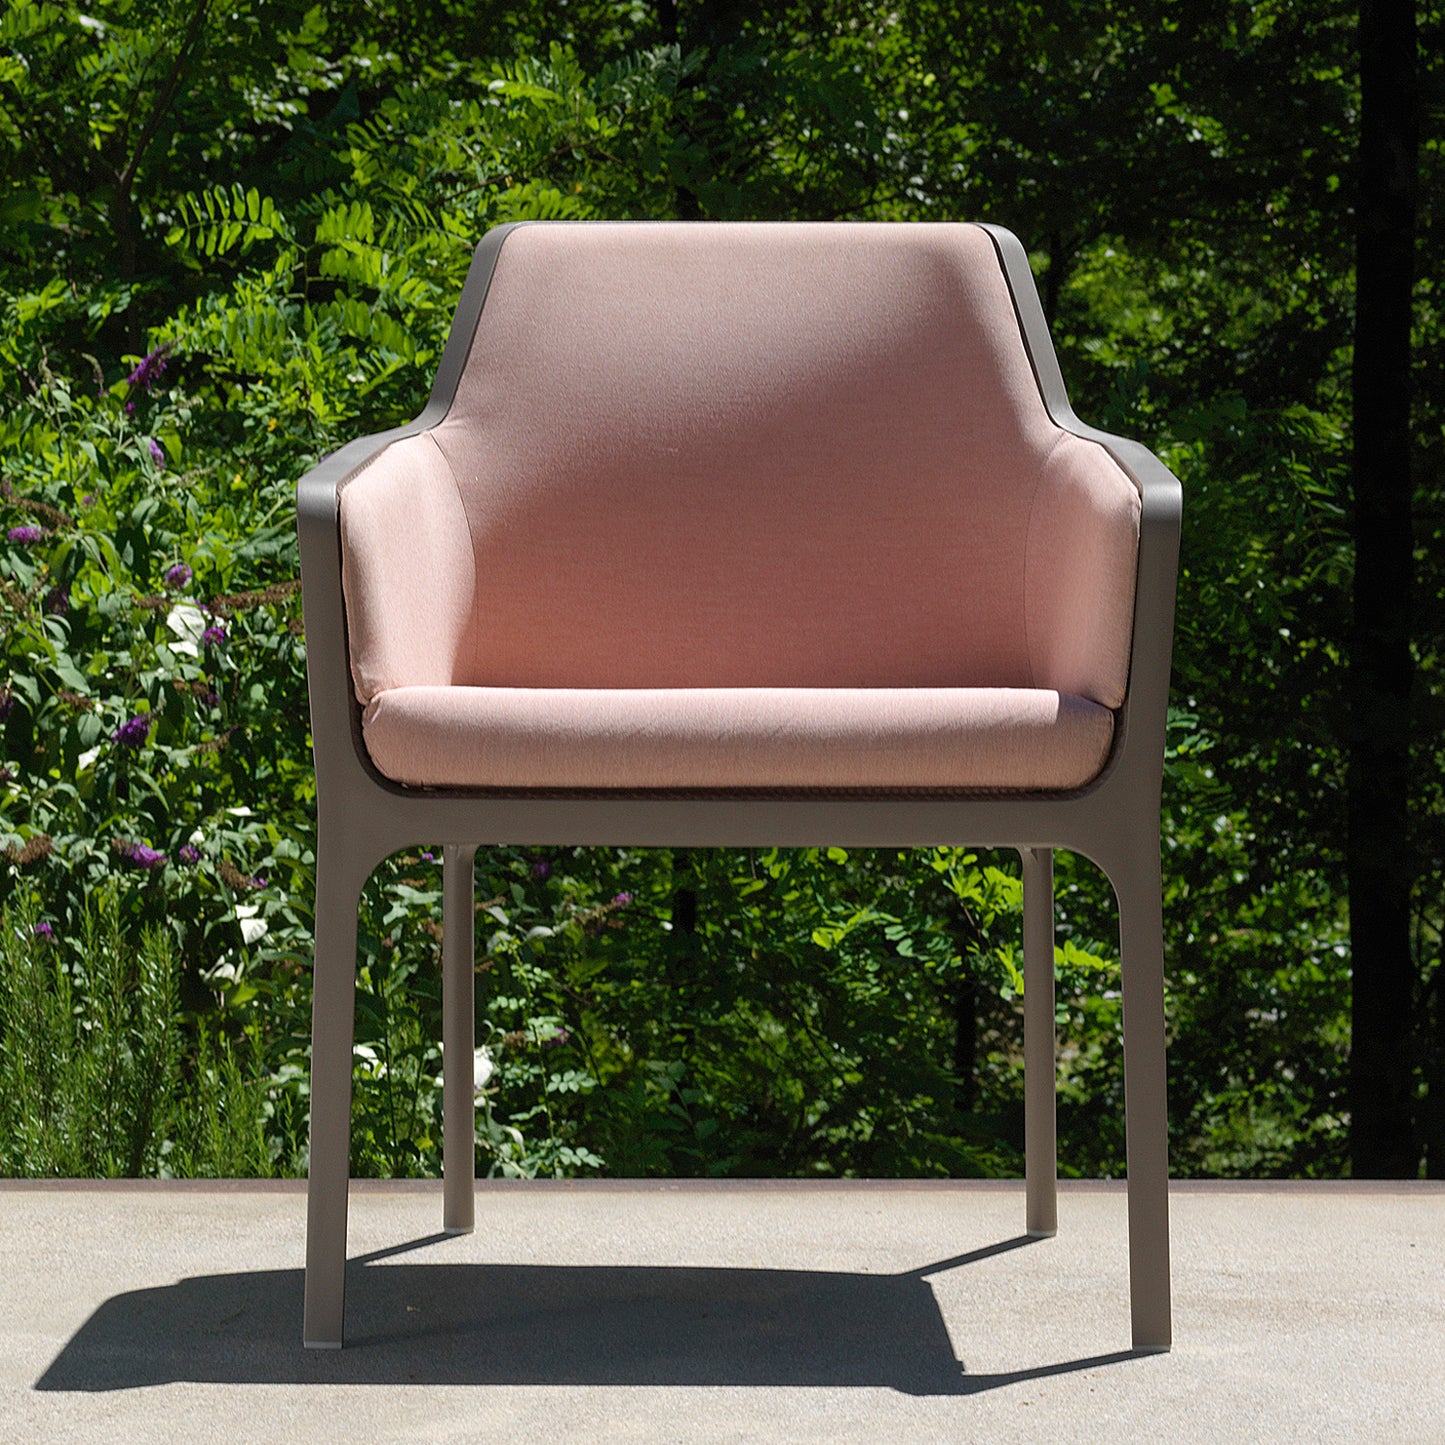 Net Relax Garden Chair By Nardi - Set Of 6